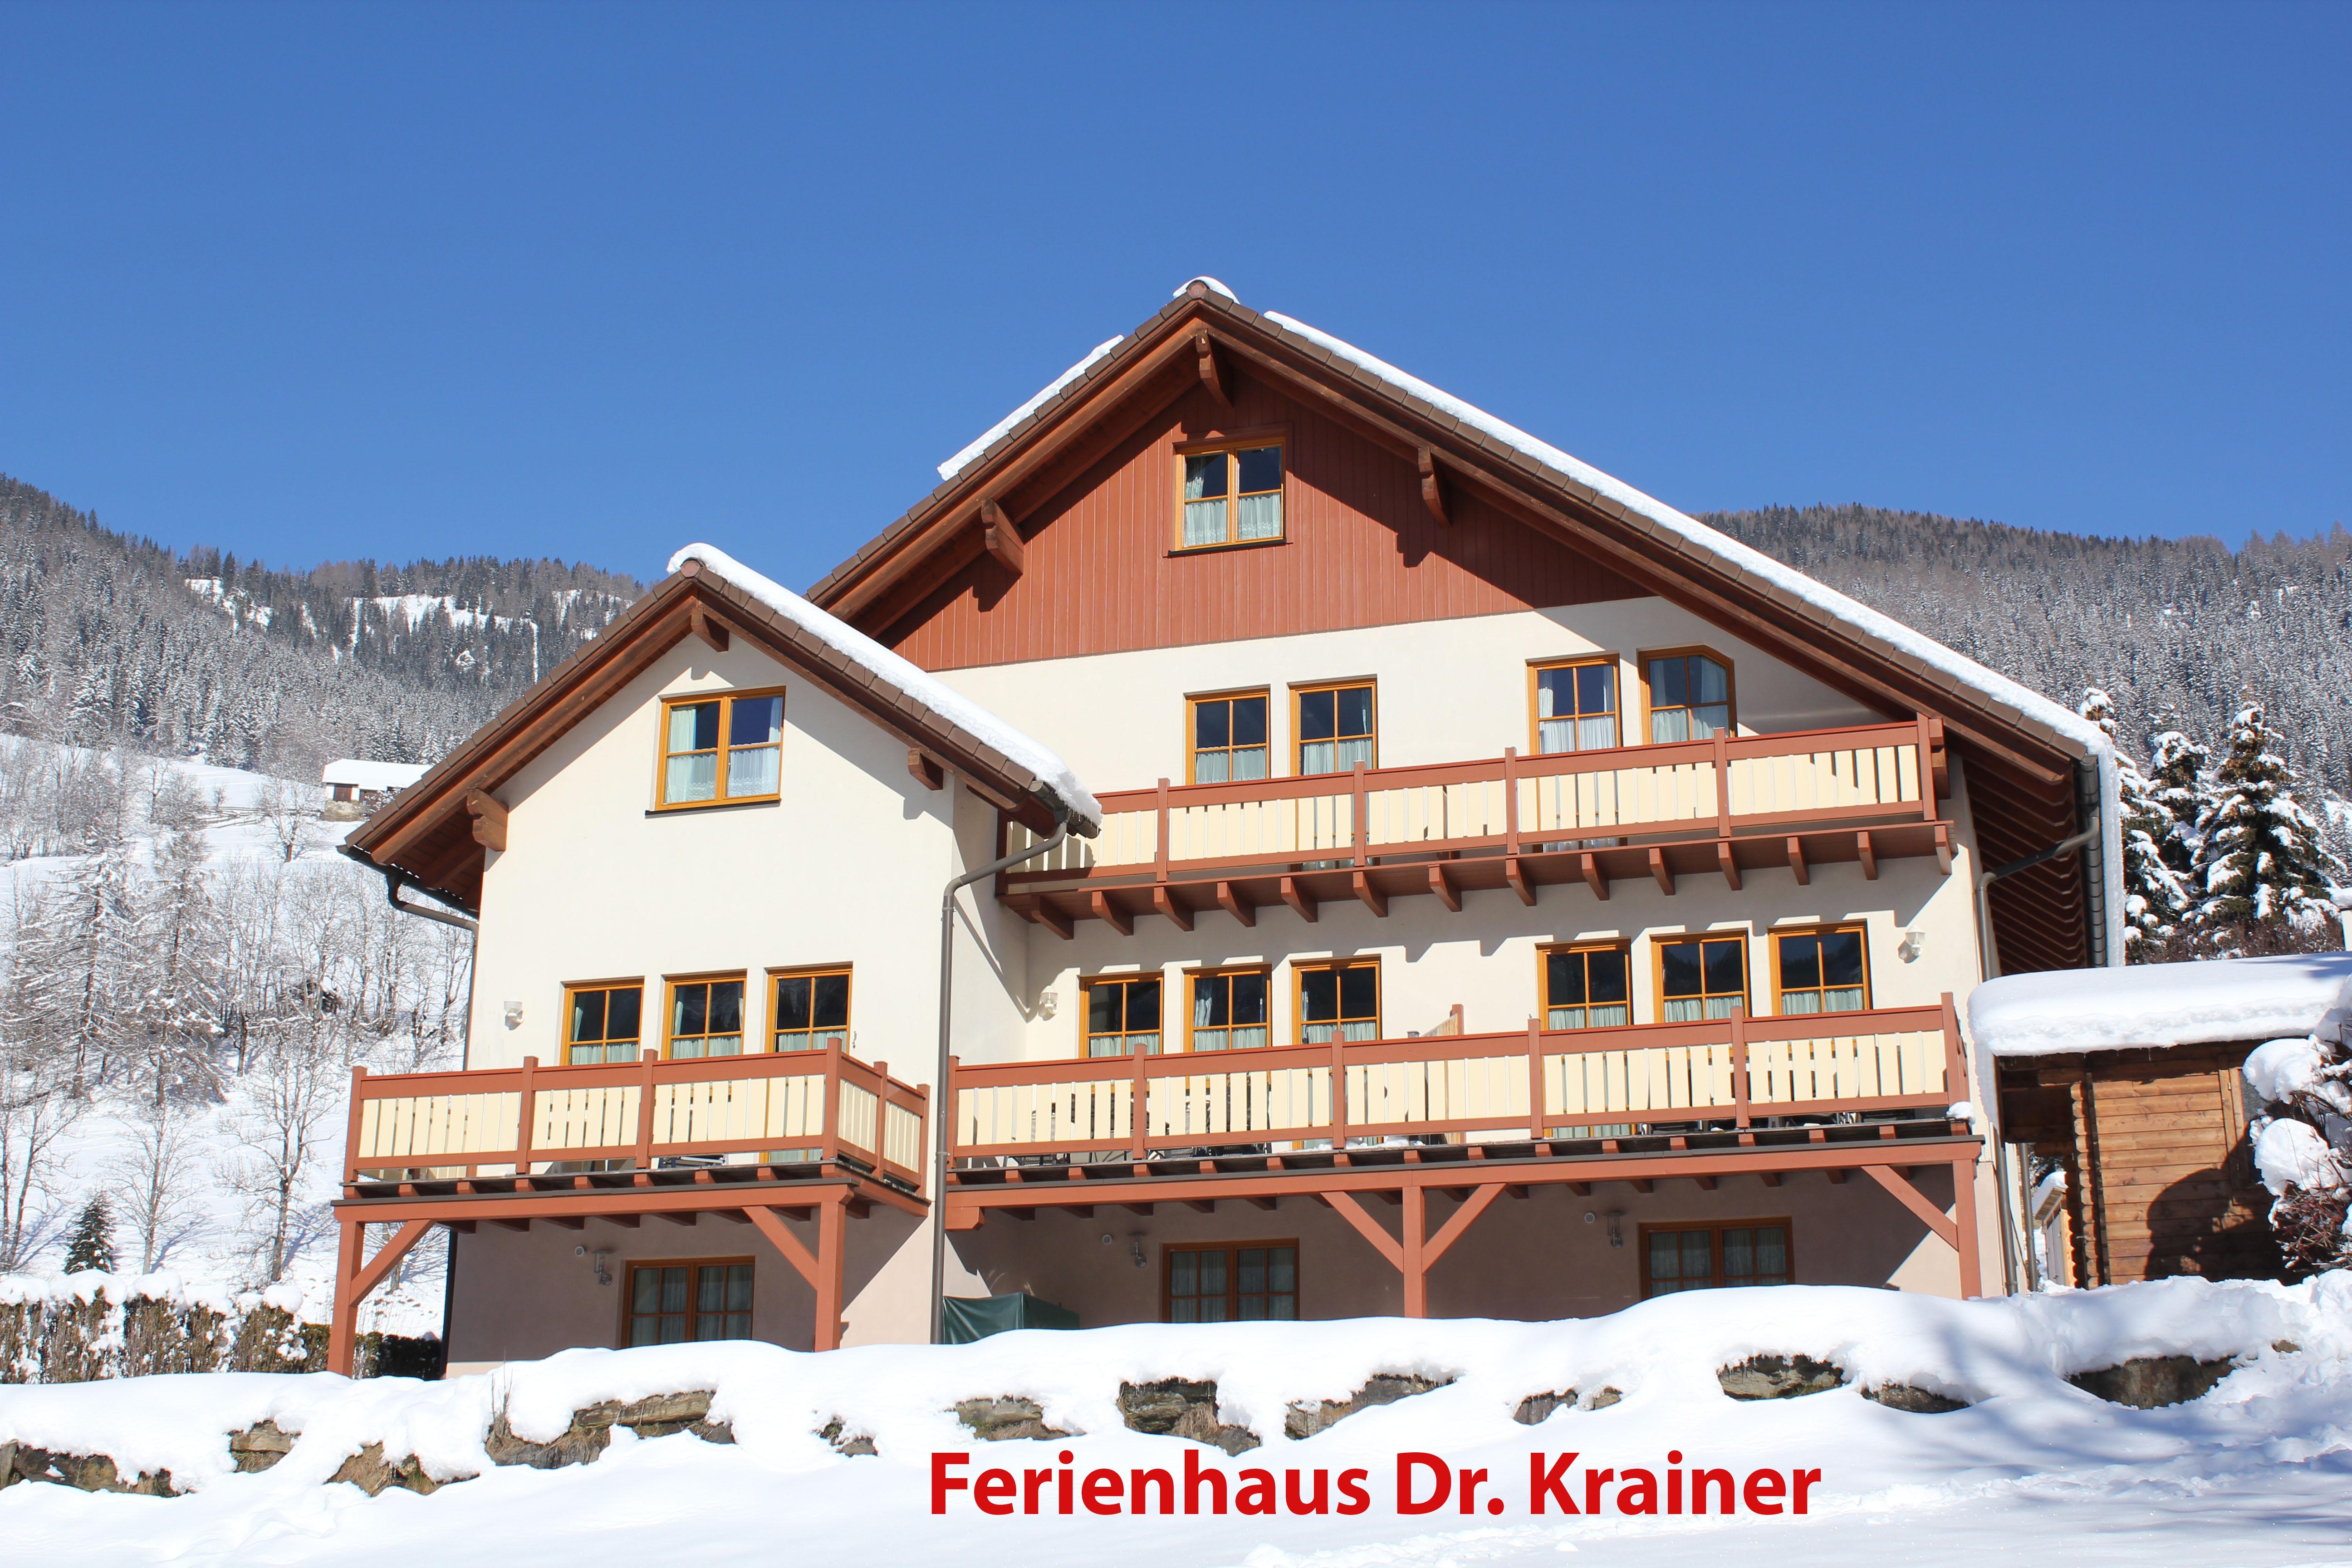 Ferienhaus Christina und Ferienhaus Dr. Krainer Dr Ferienwohnung in Österreich